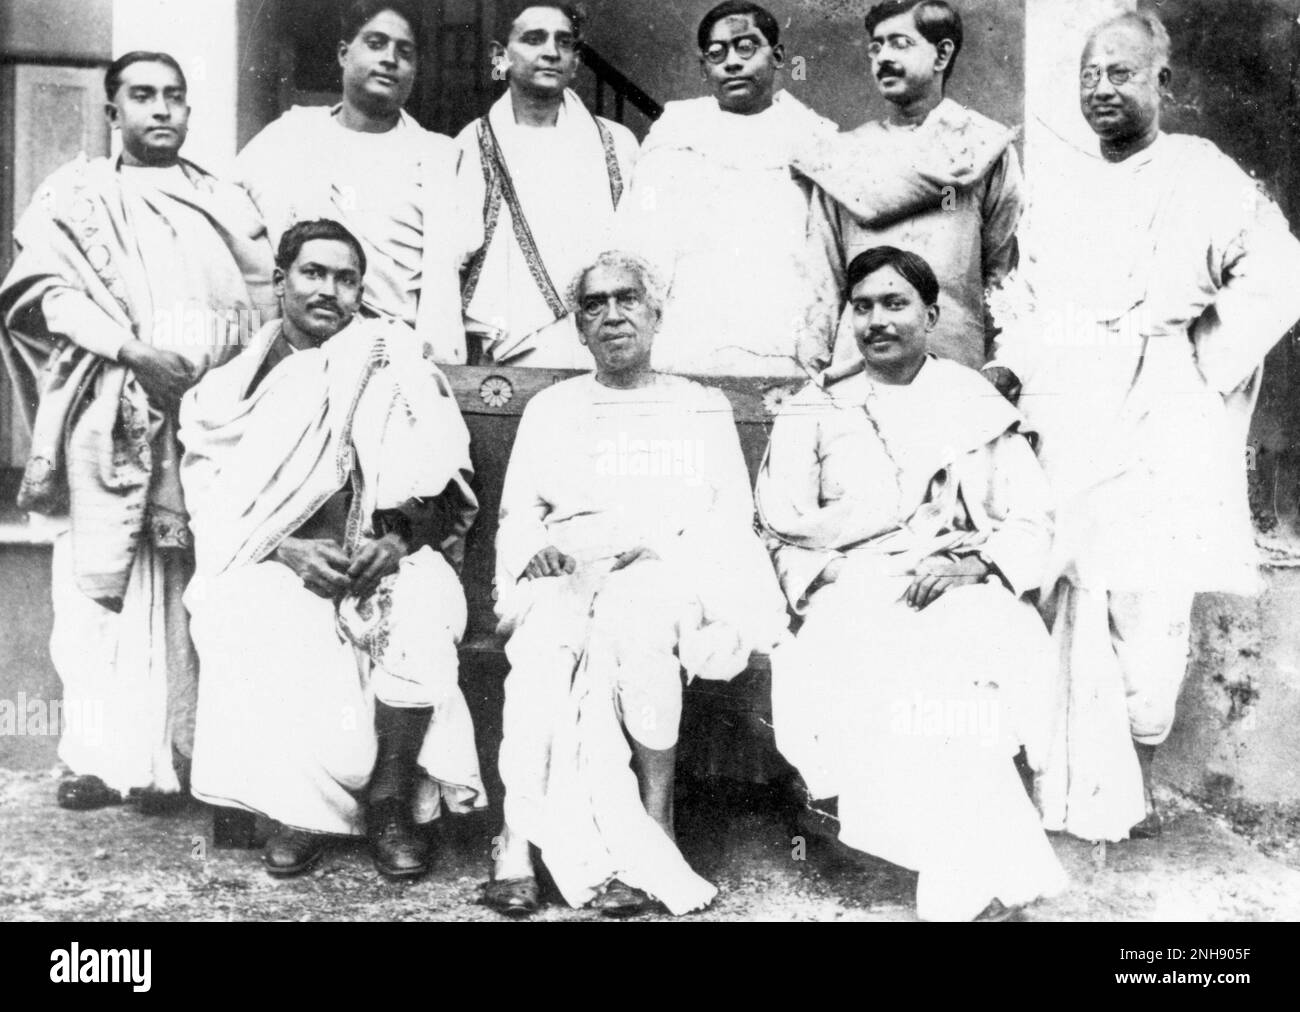 Satyendra Nath Bose, mathématicien et physicien indien, avec d'autres scientifiques de l'Université de Calcutta, avant 1937. Assis (de gauche à droite) Meghnad Saha, Acharya Jagadish Chandra Bose, Jnan Chandra Ghosh; debout (de gauche à droite) Snehamay Dutta, Satyendra Nath Bose, Debendra Mohan Bose, Nikhil Ranjan Sen, Jnanendra Nath Mukherjee, Nagendra Chandra Nag. Banque D'Images